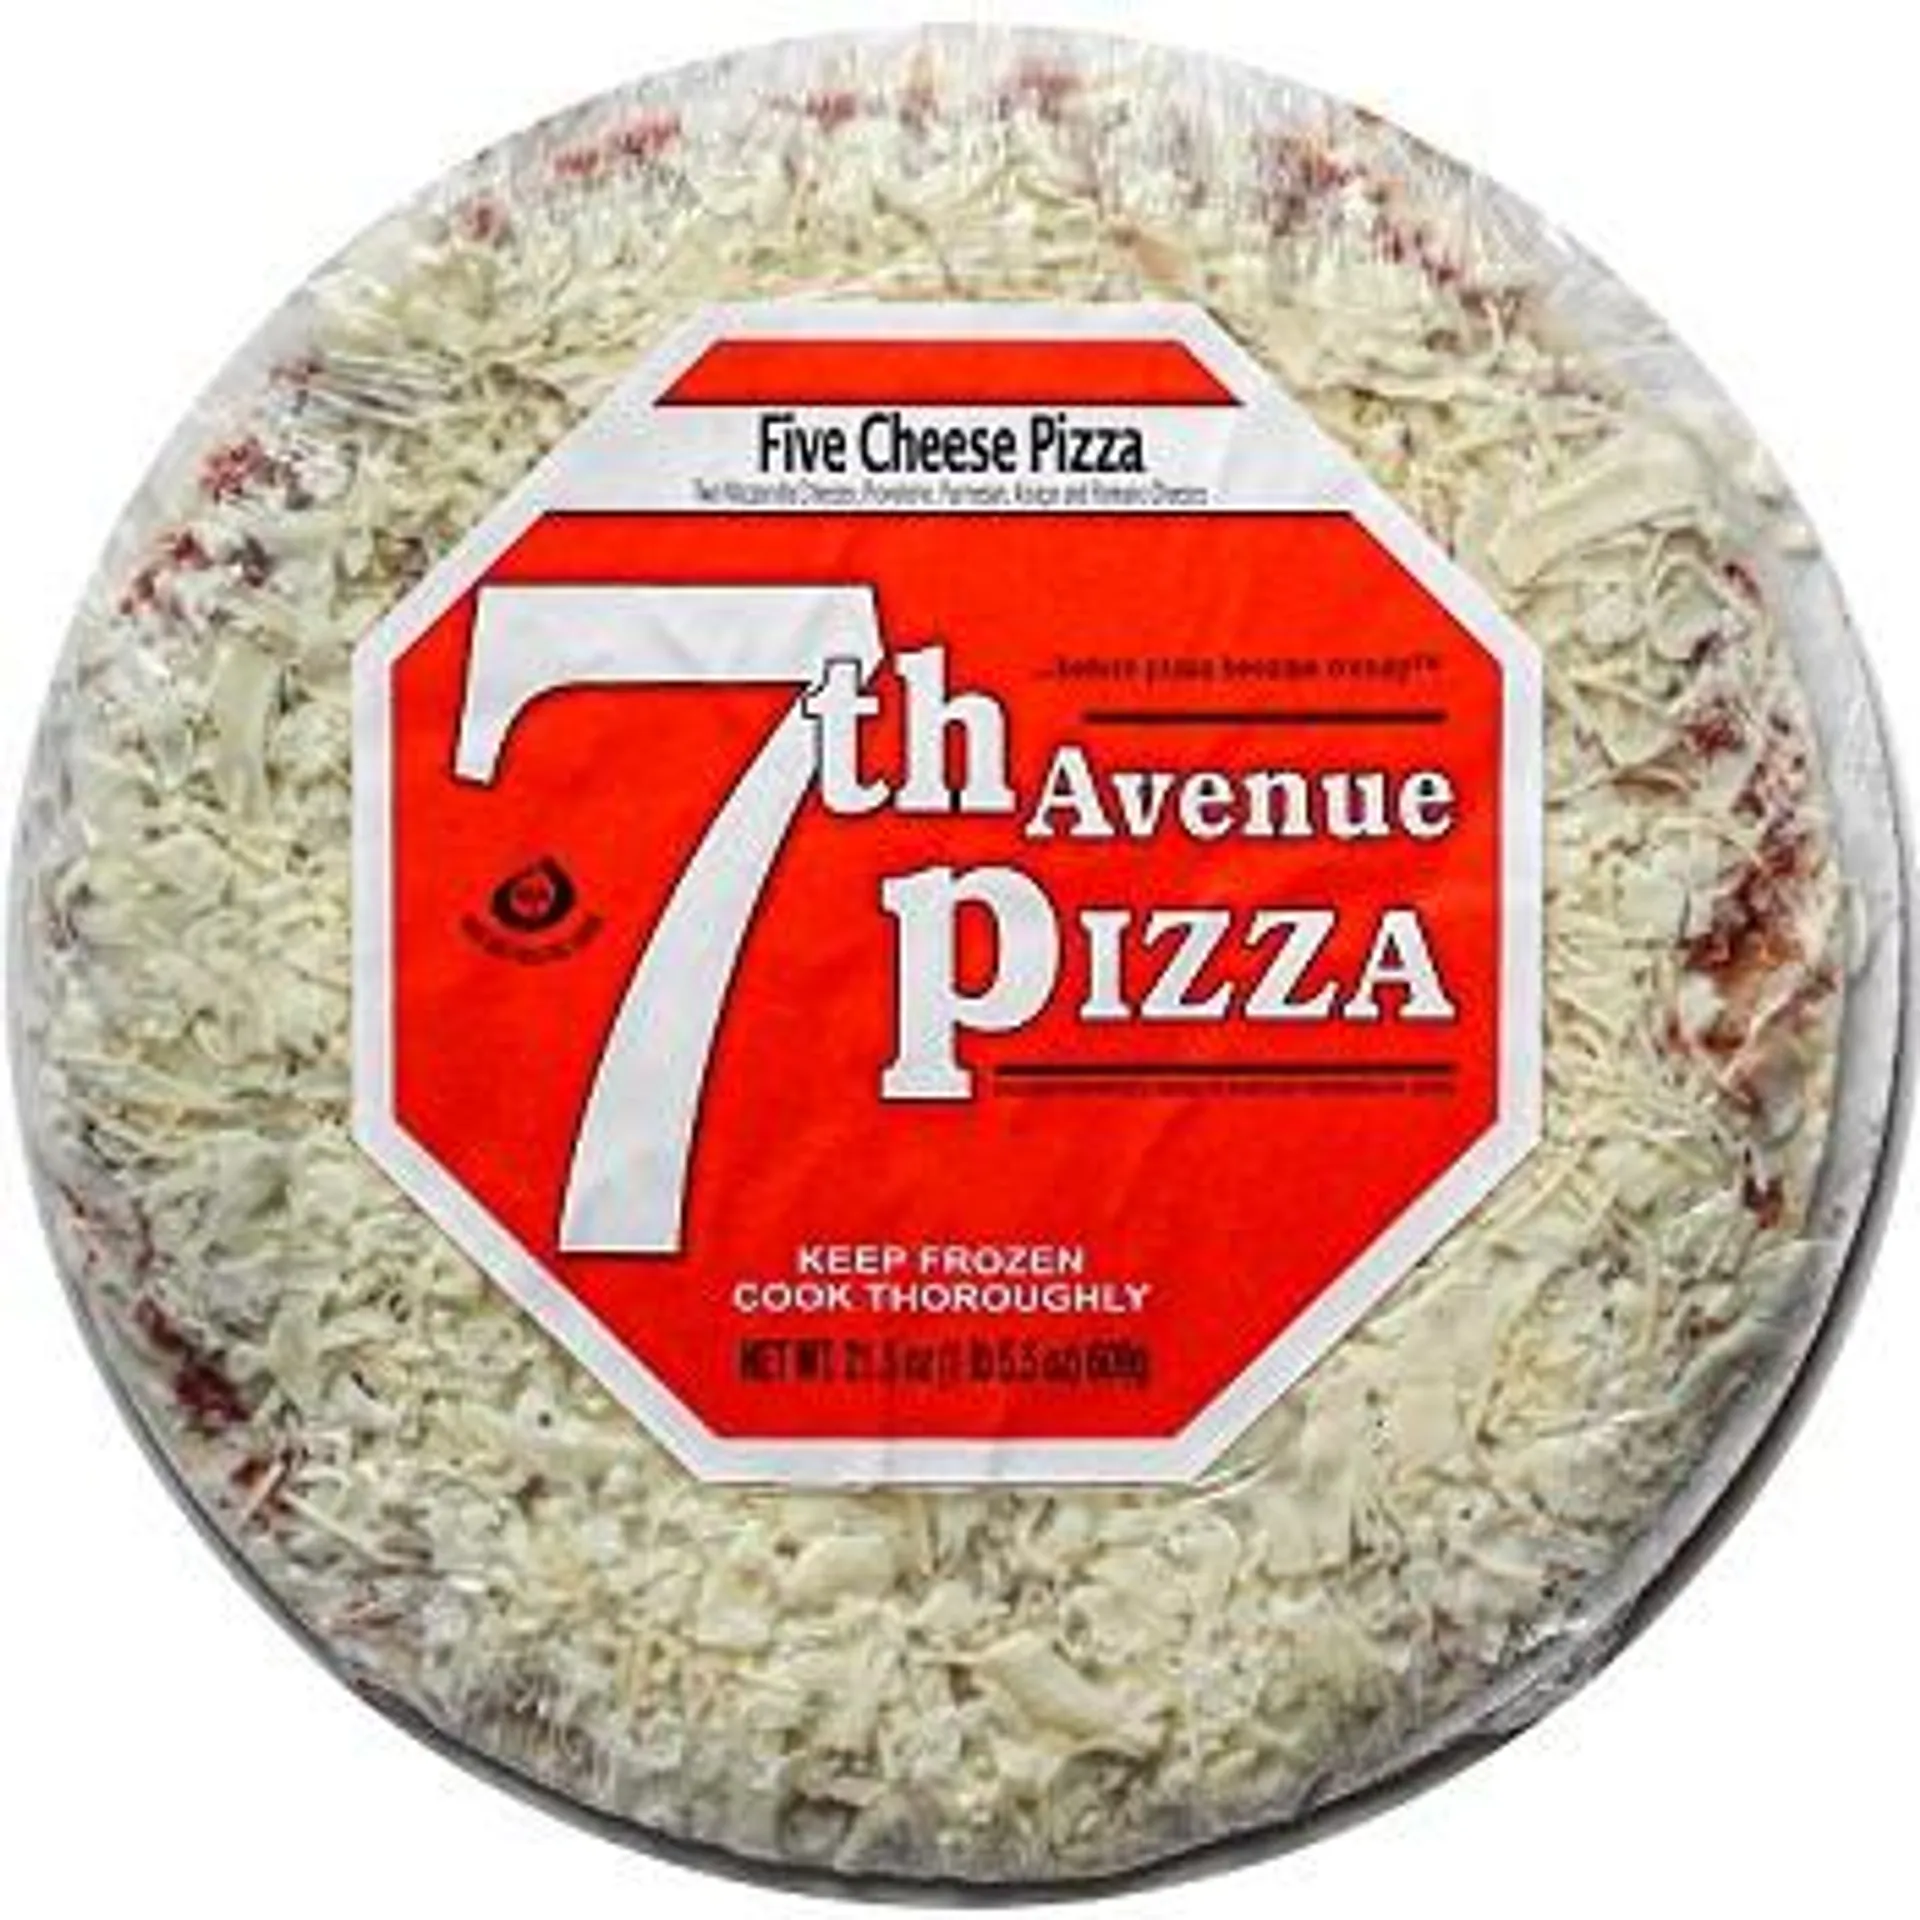 7th Avenue Pizza Five Cheese Pizza